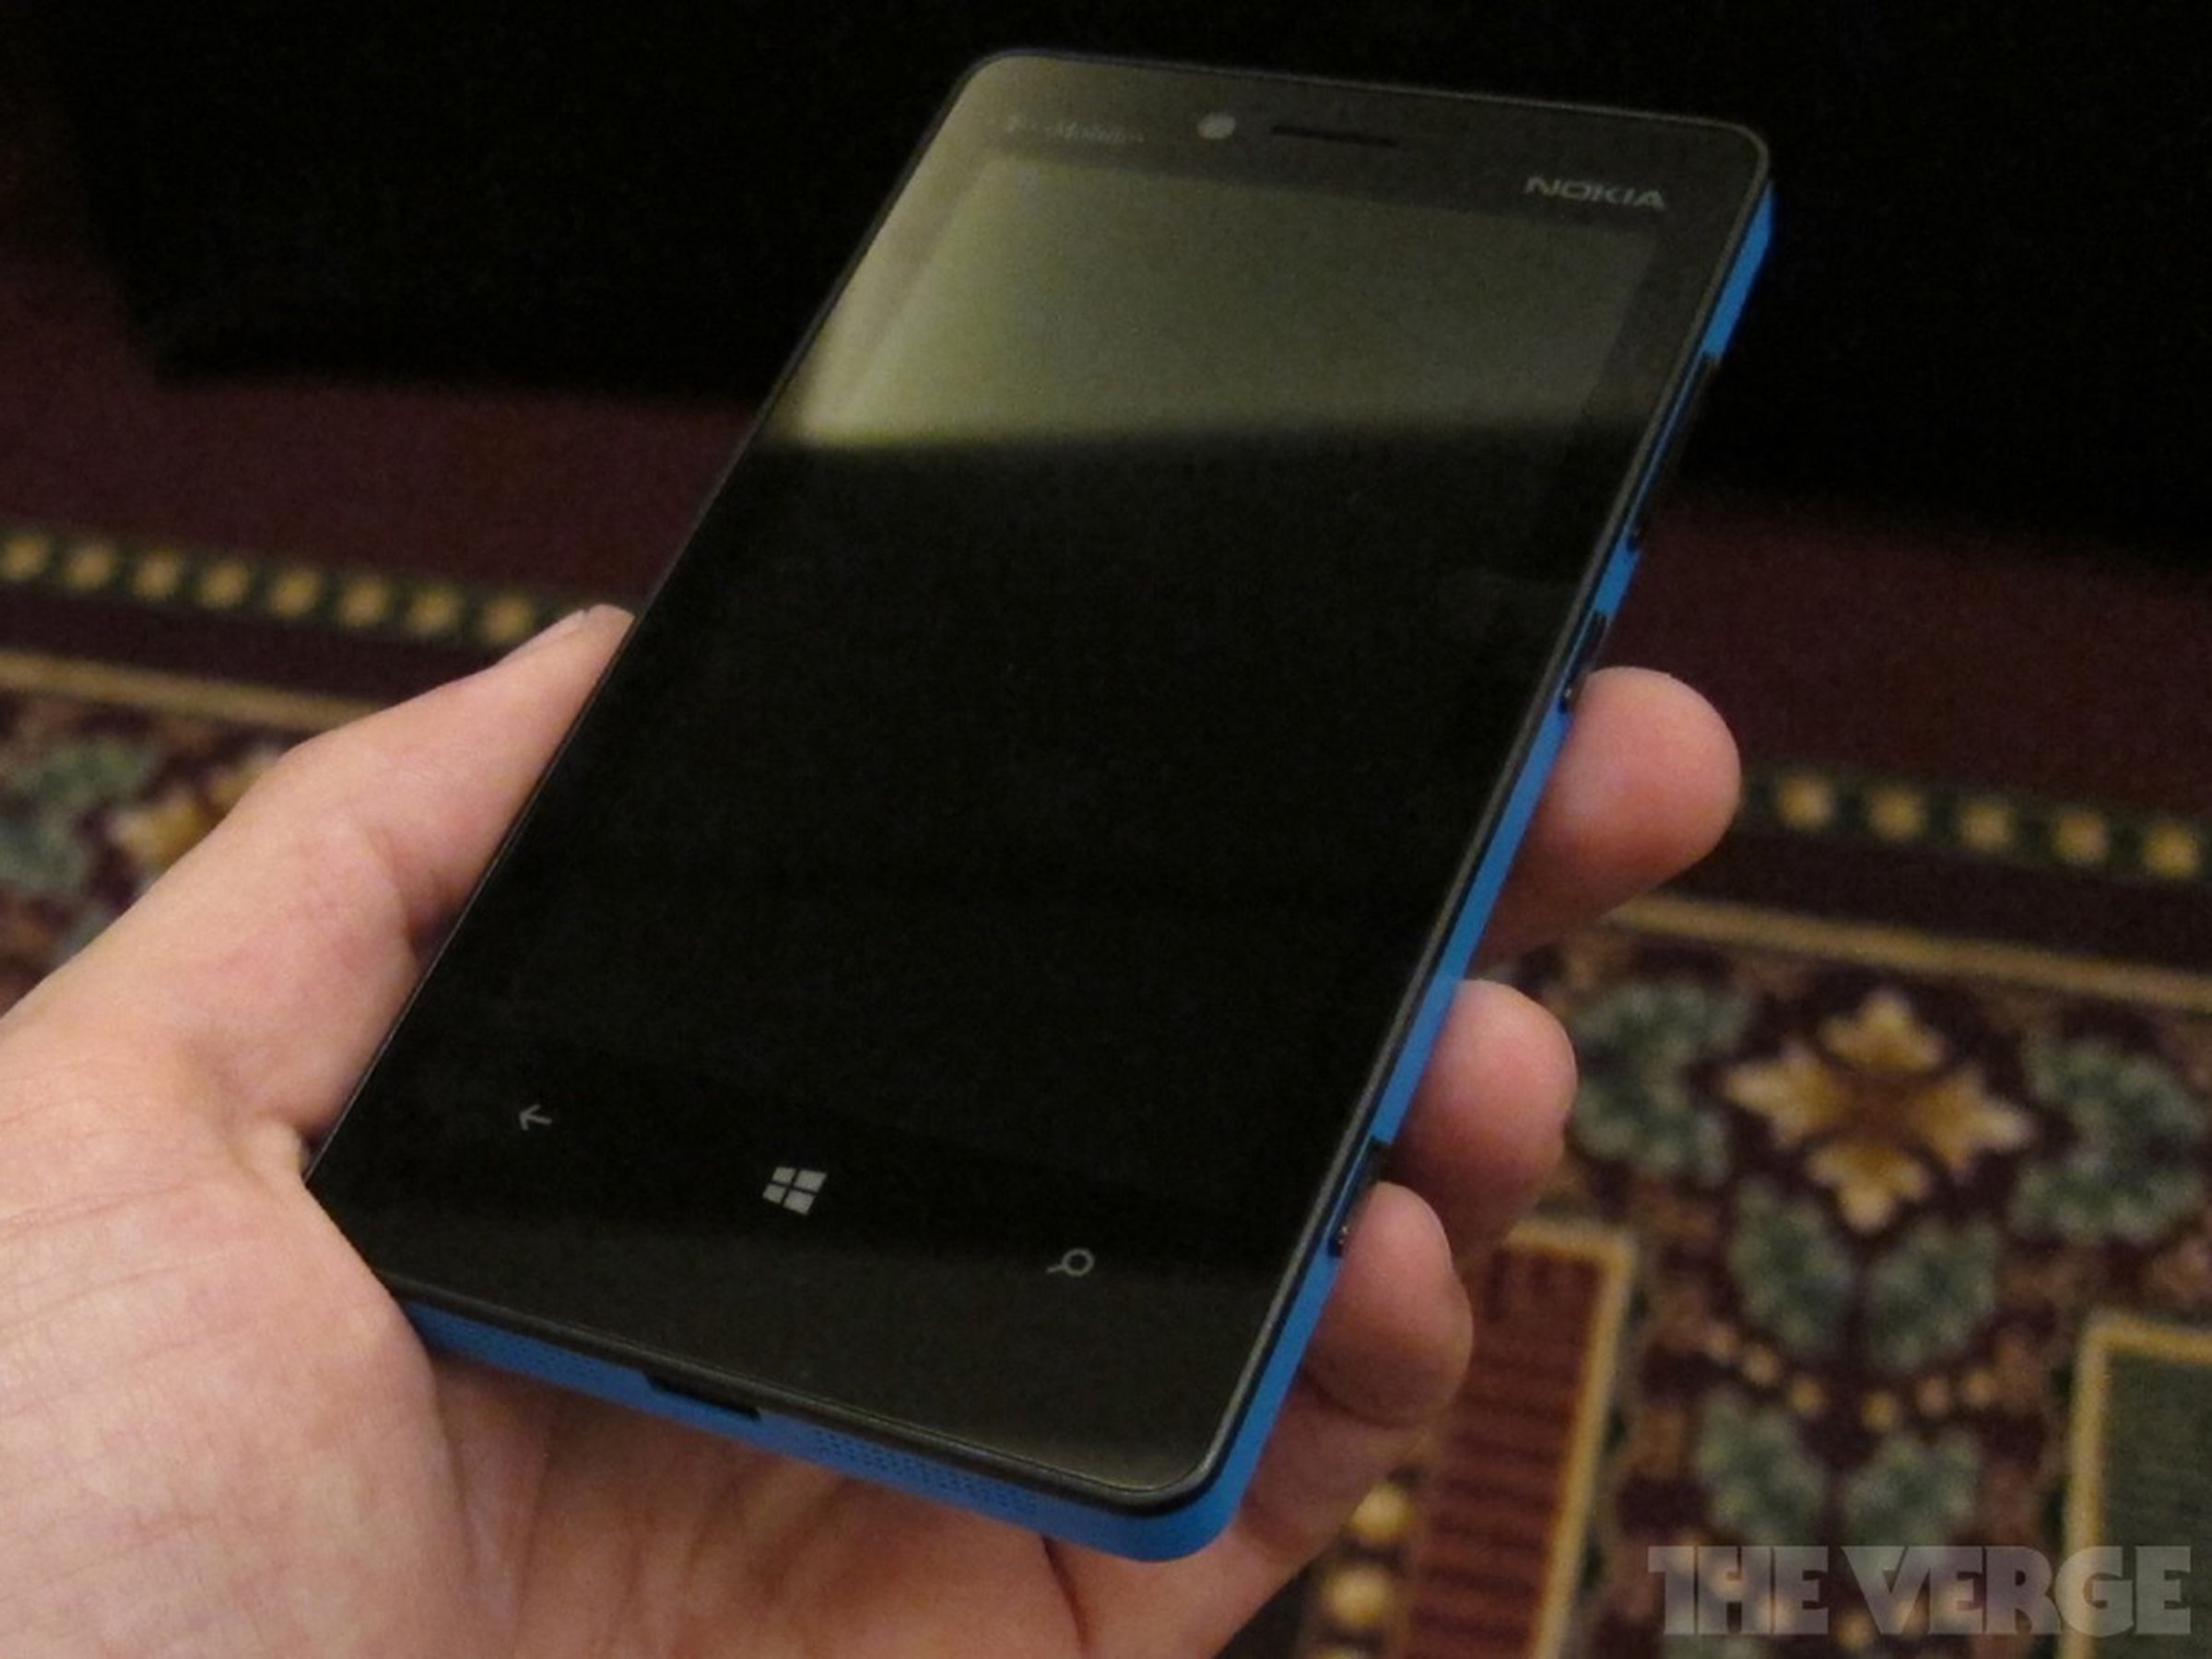 Nokia Lumia 810 photos